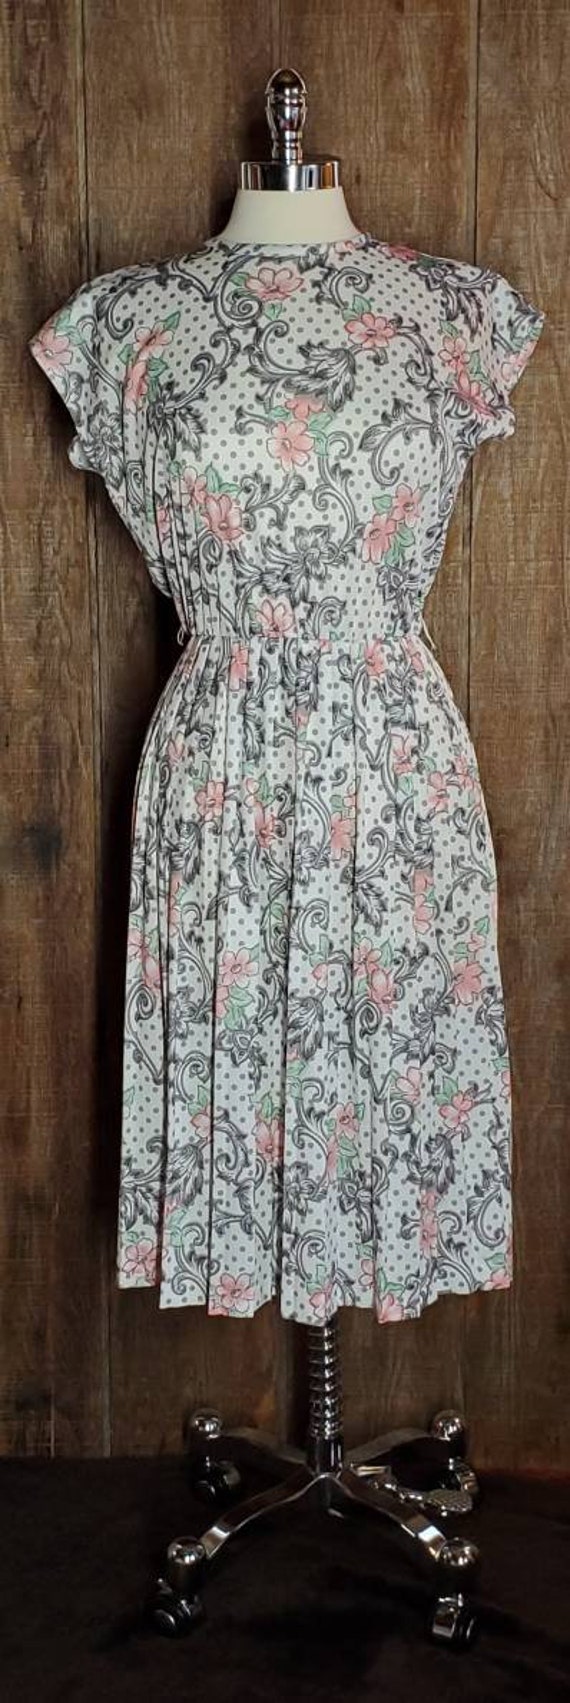 Vintage Floral Dress - image 3